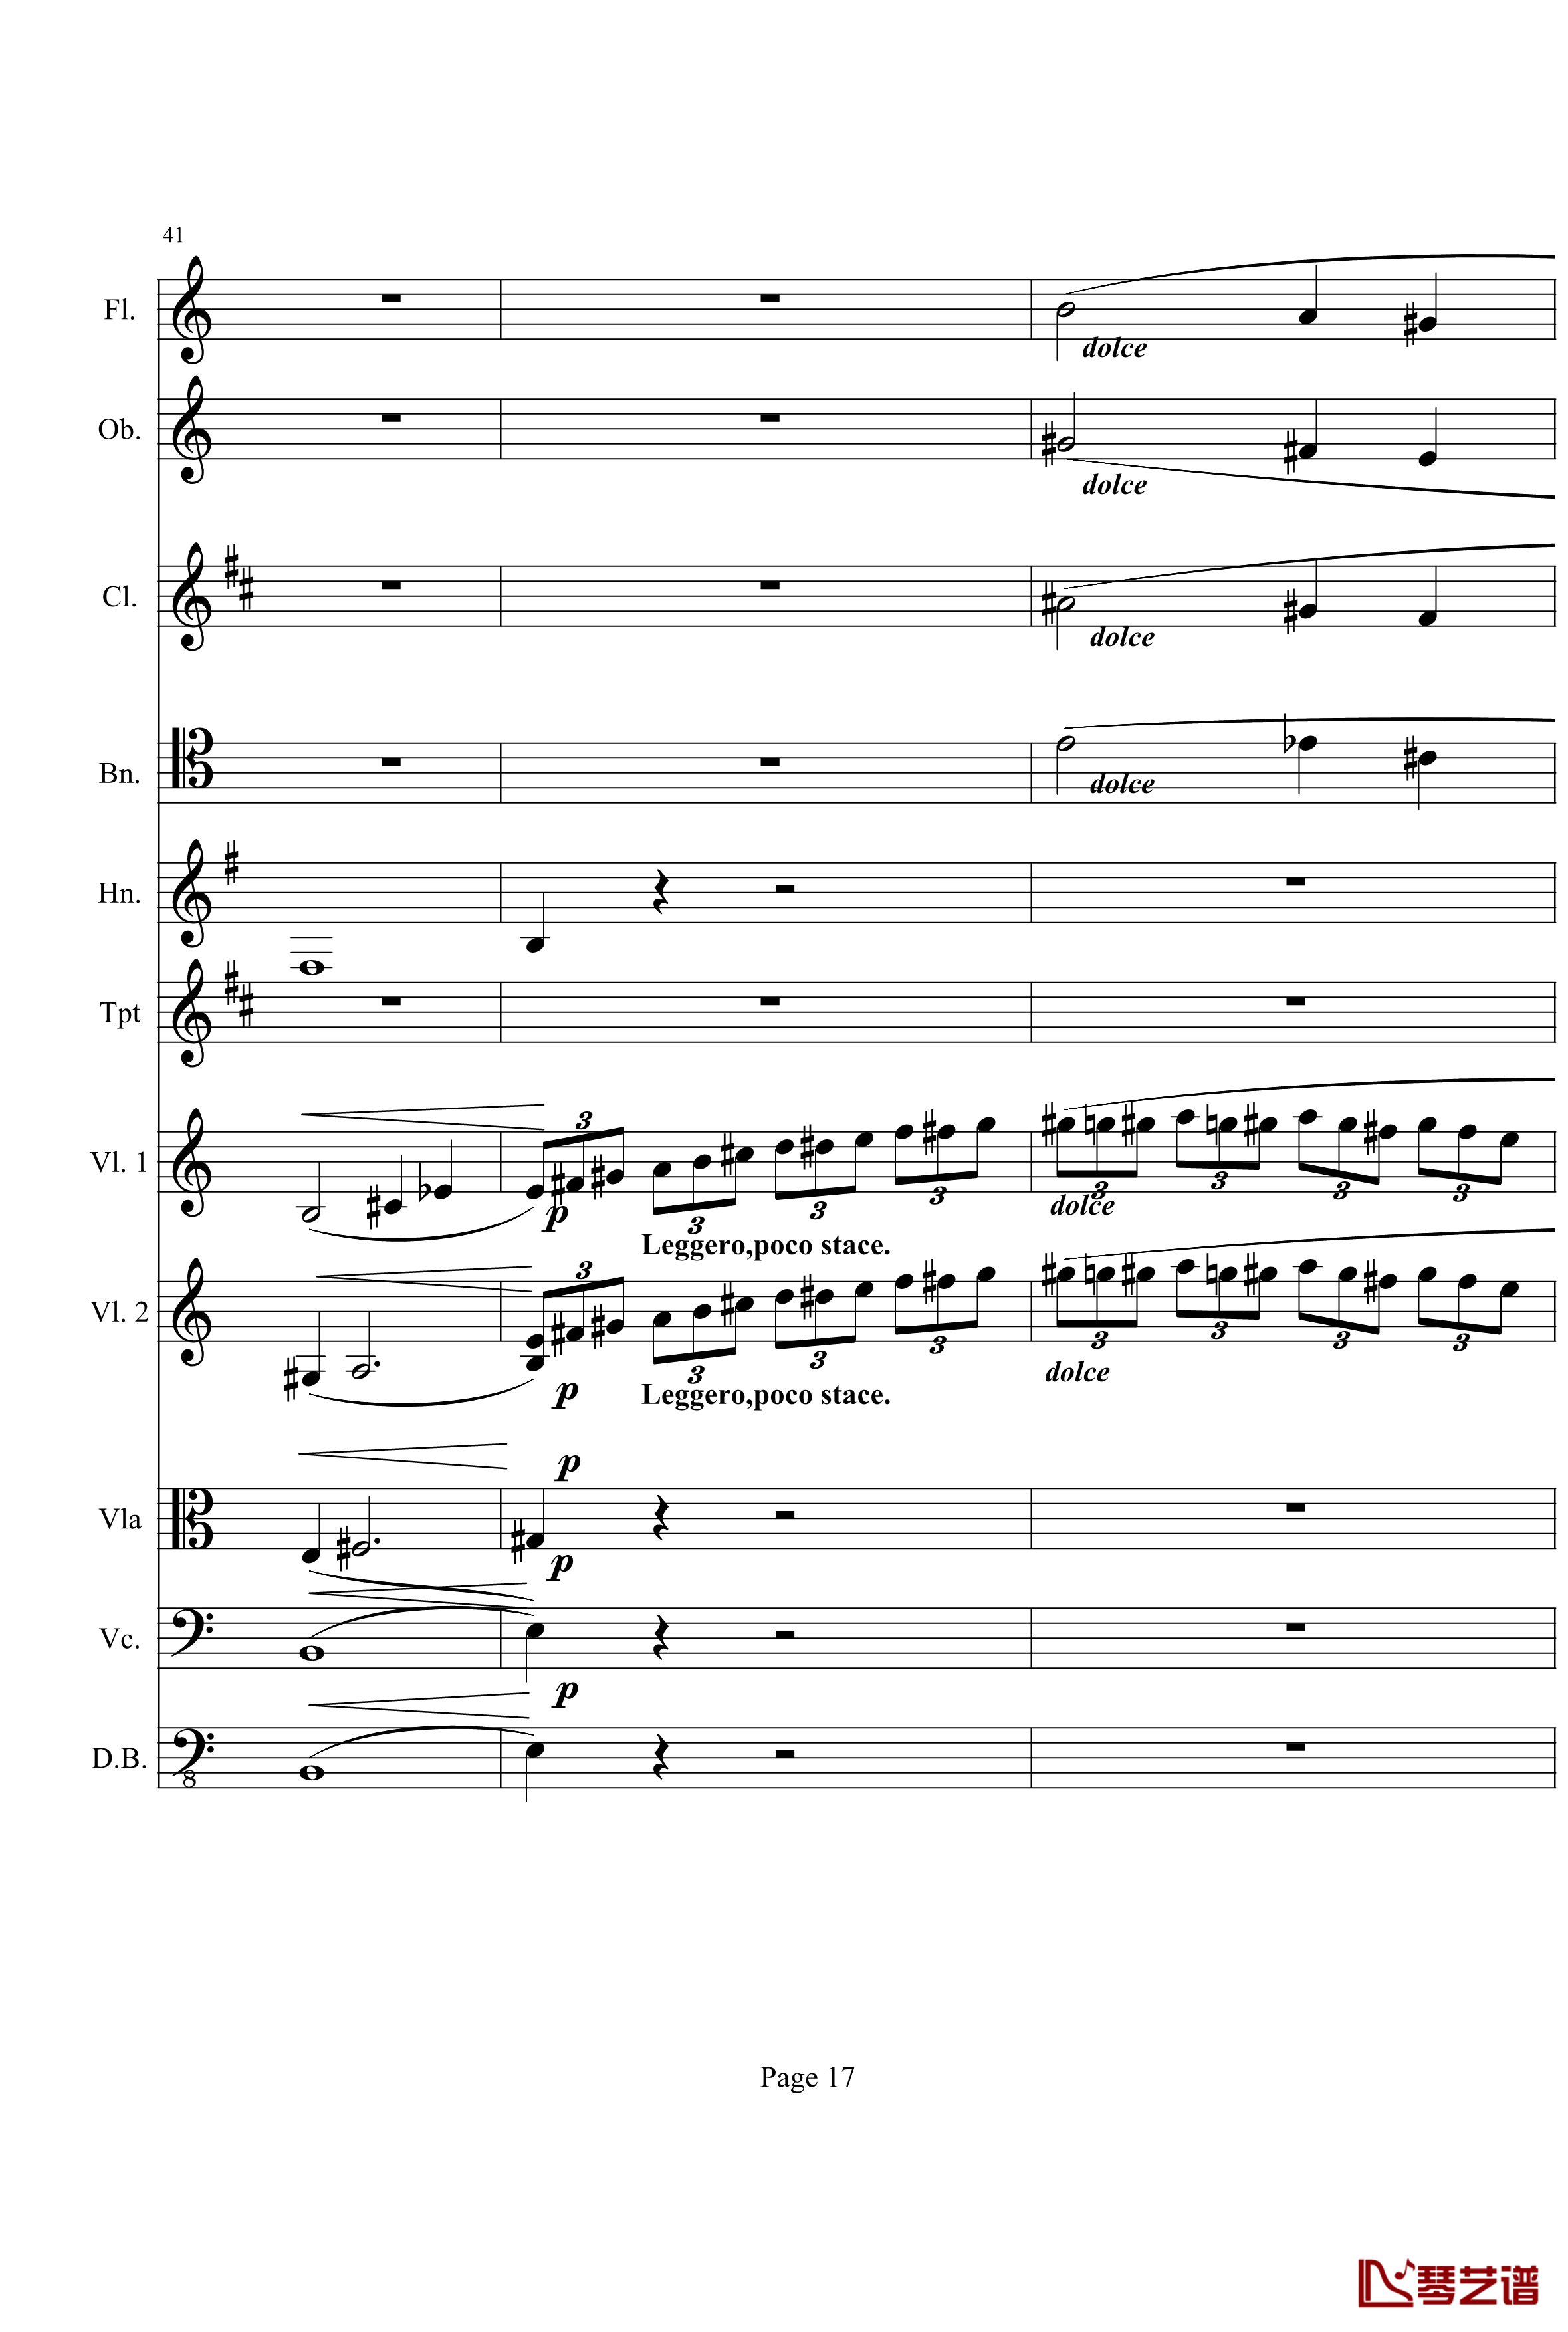 奏鸣曲之交响钢琴谱-第21-Ⅰ-贝多芬-beethoven17